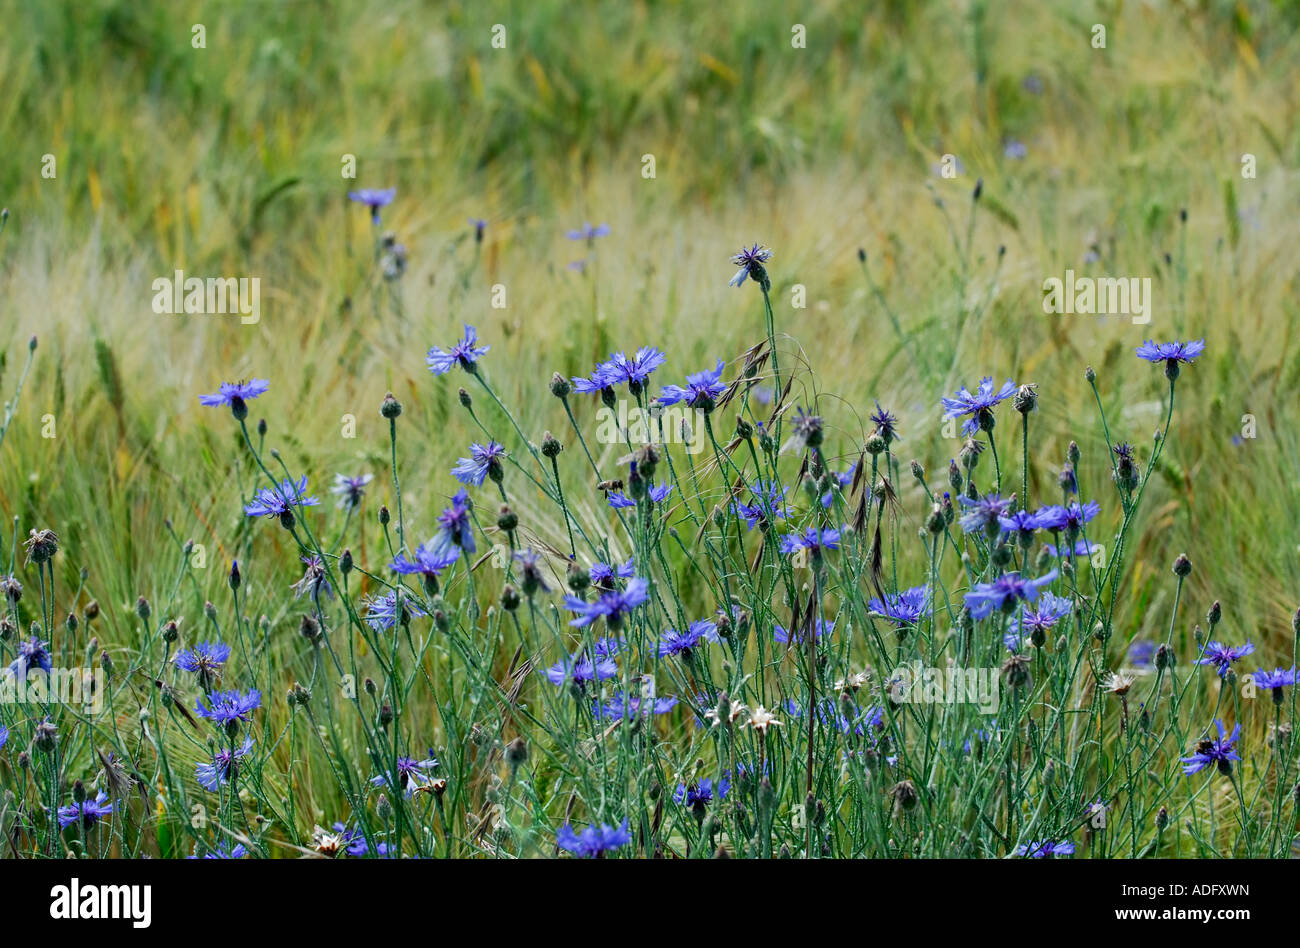 Bleuet - Centaurea cyanus - dans le champ d'orge, France. Banque D'Images